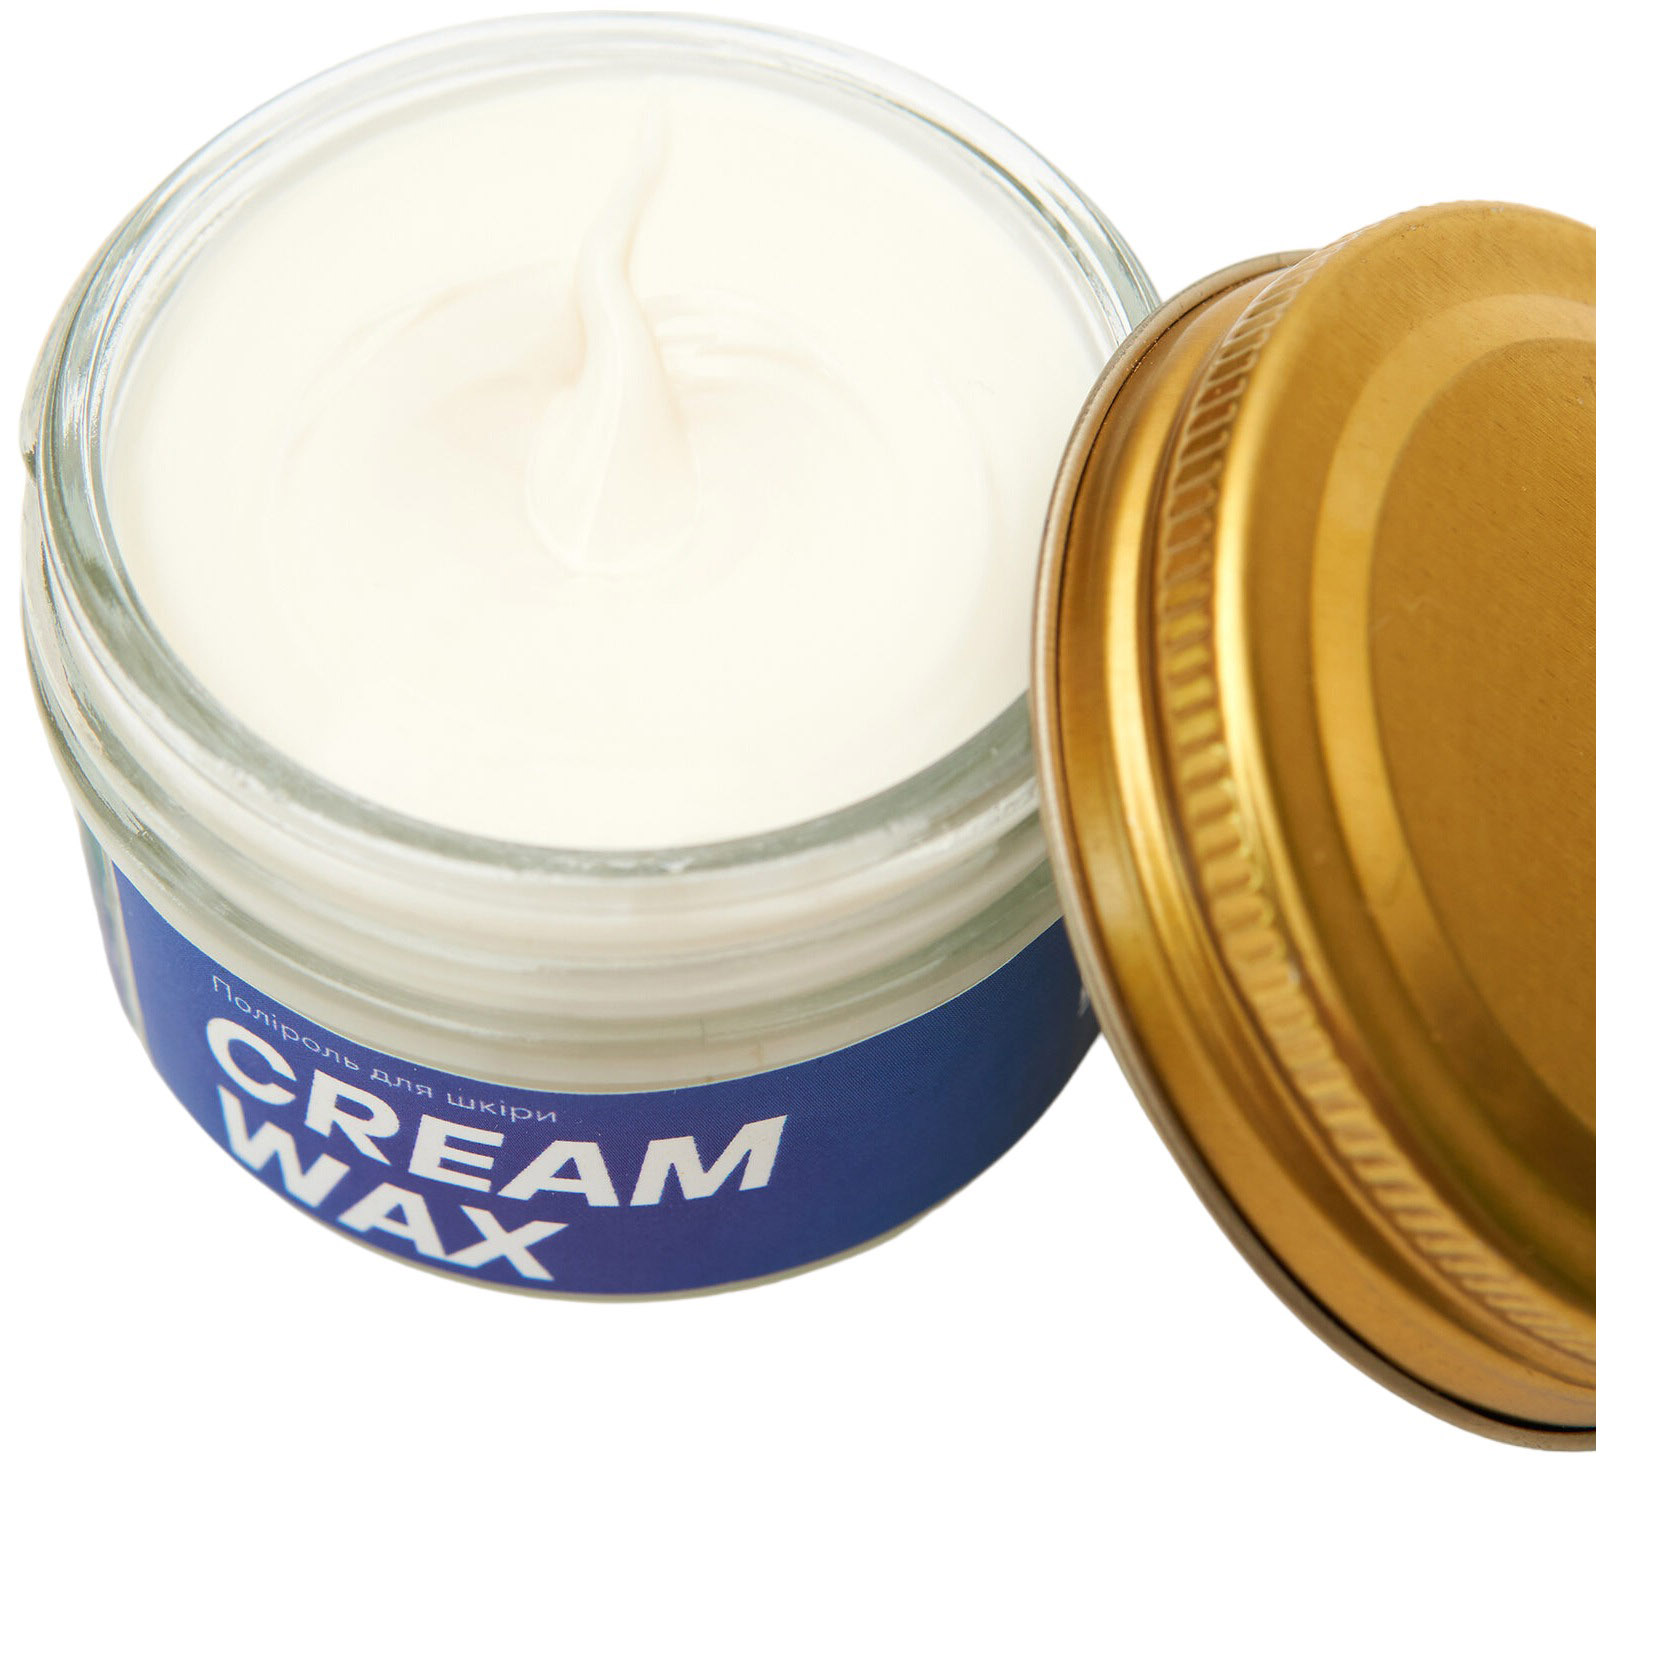 Поліроль для гладкої шкіри взуття Beclean Cream Wax 100 мл - фото 2